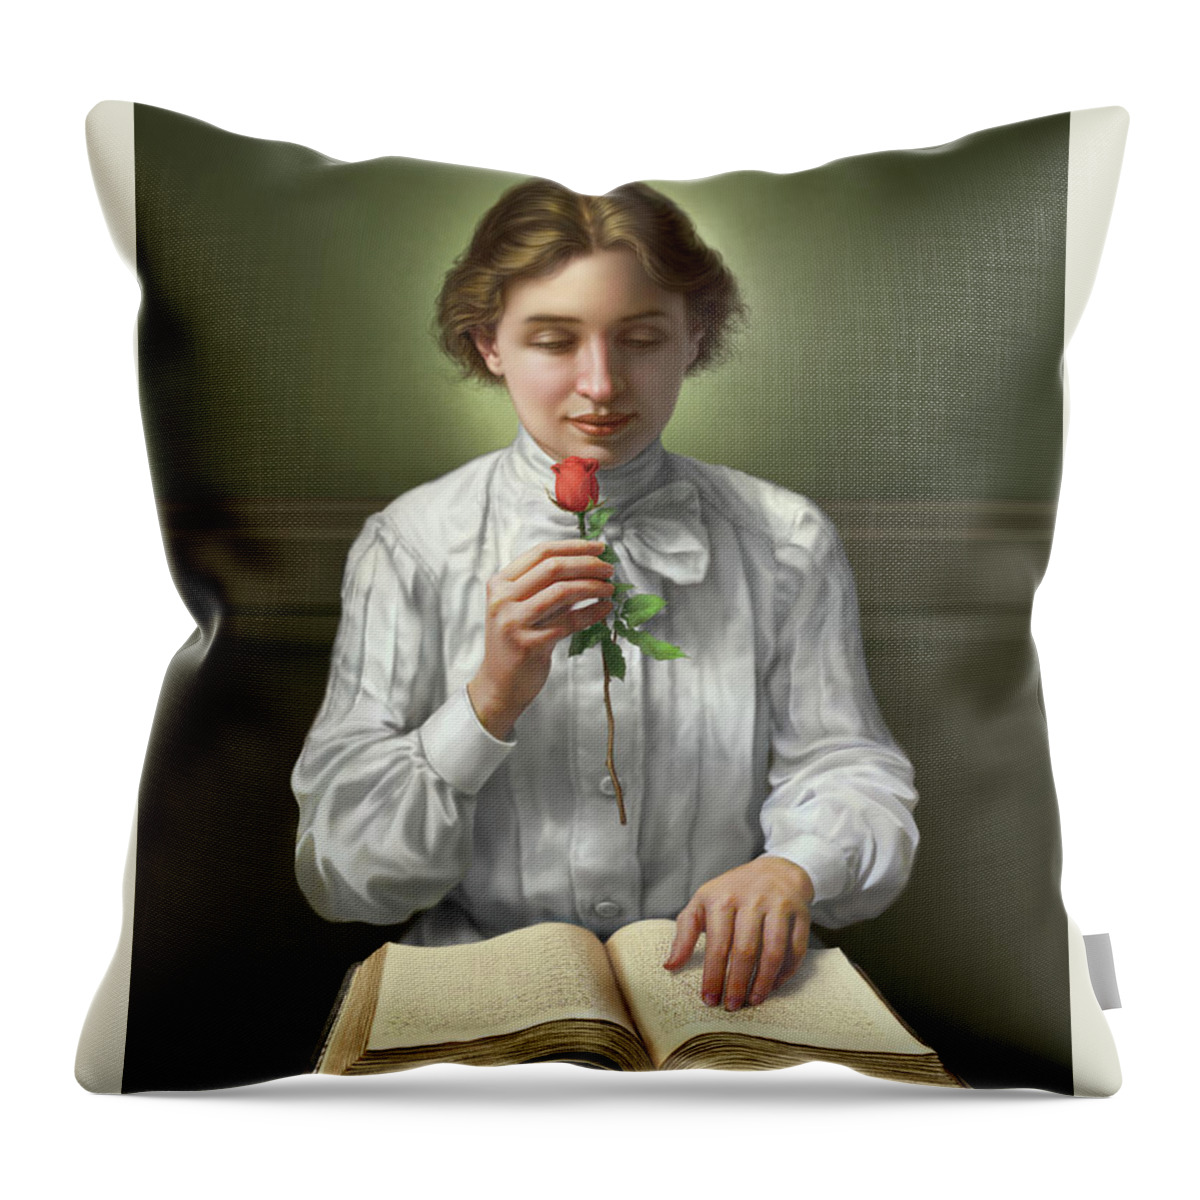 Helen Keller Throw Pillow featuring the digital art Helen Keller by Mark Fredrickson